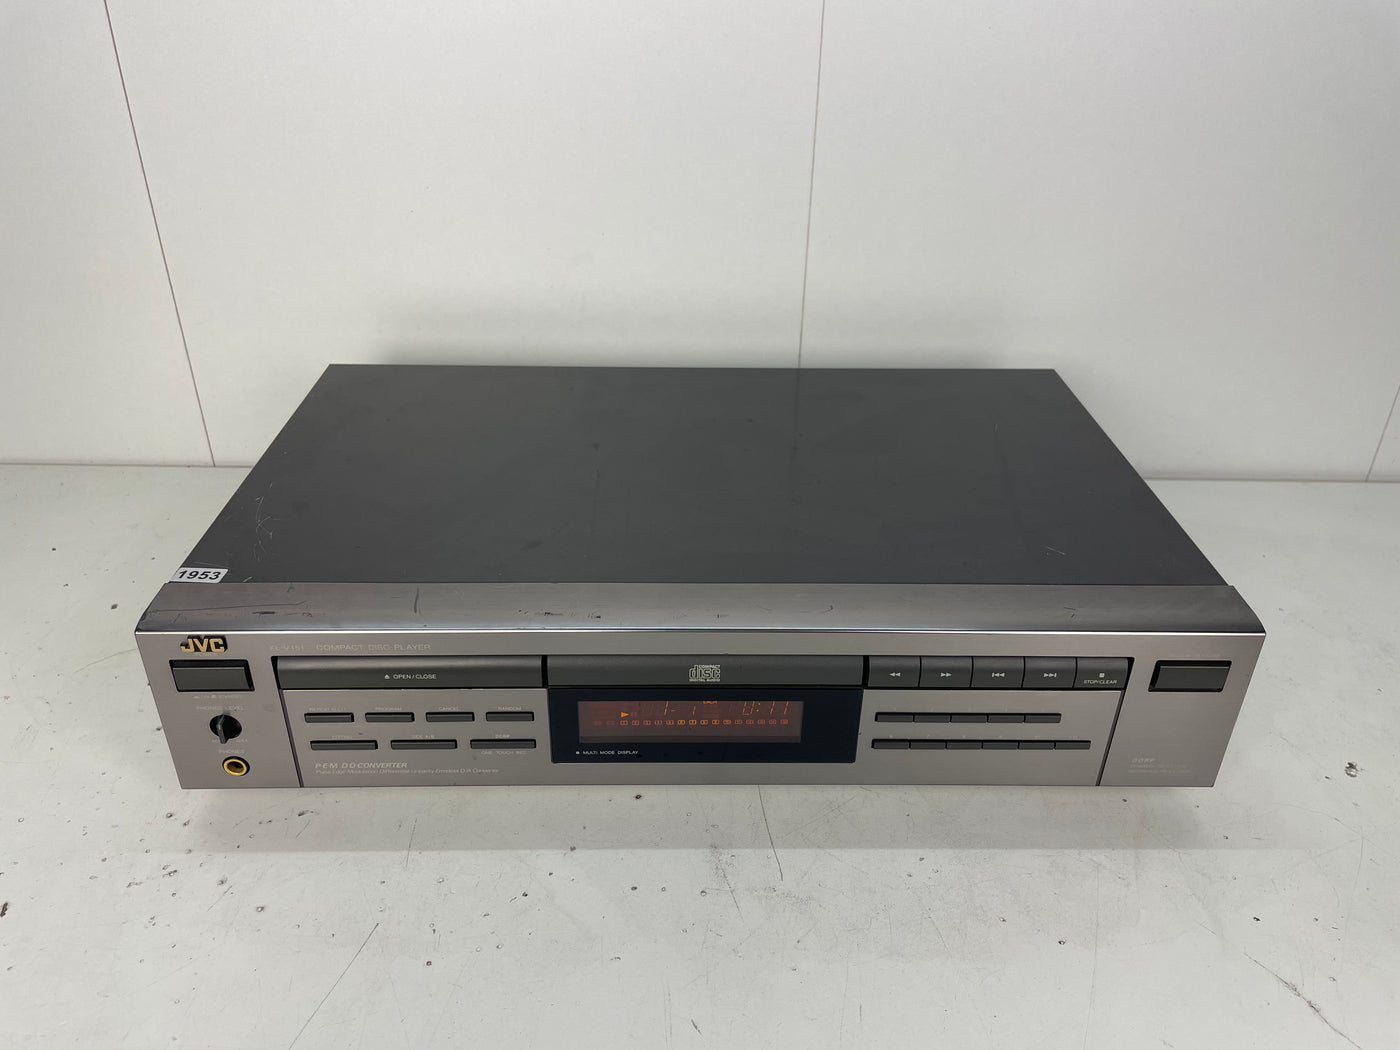 JVC XL-V151 Stereo Compact Disc Player